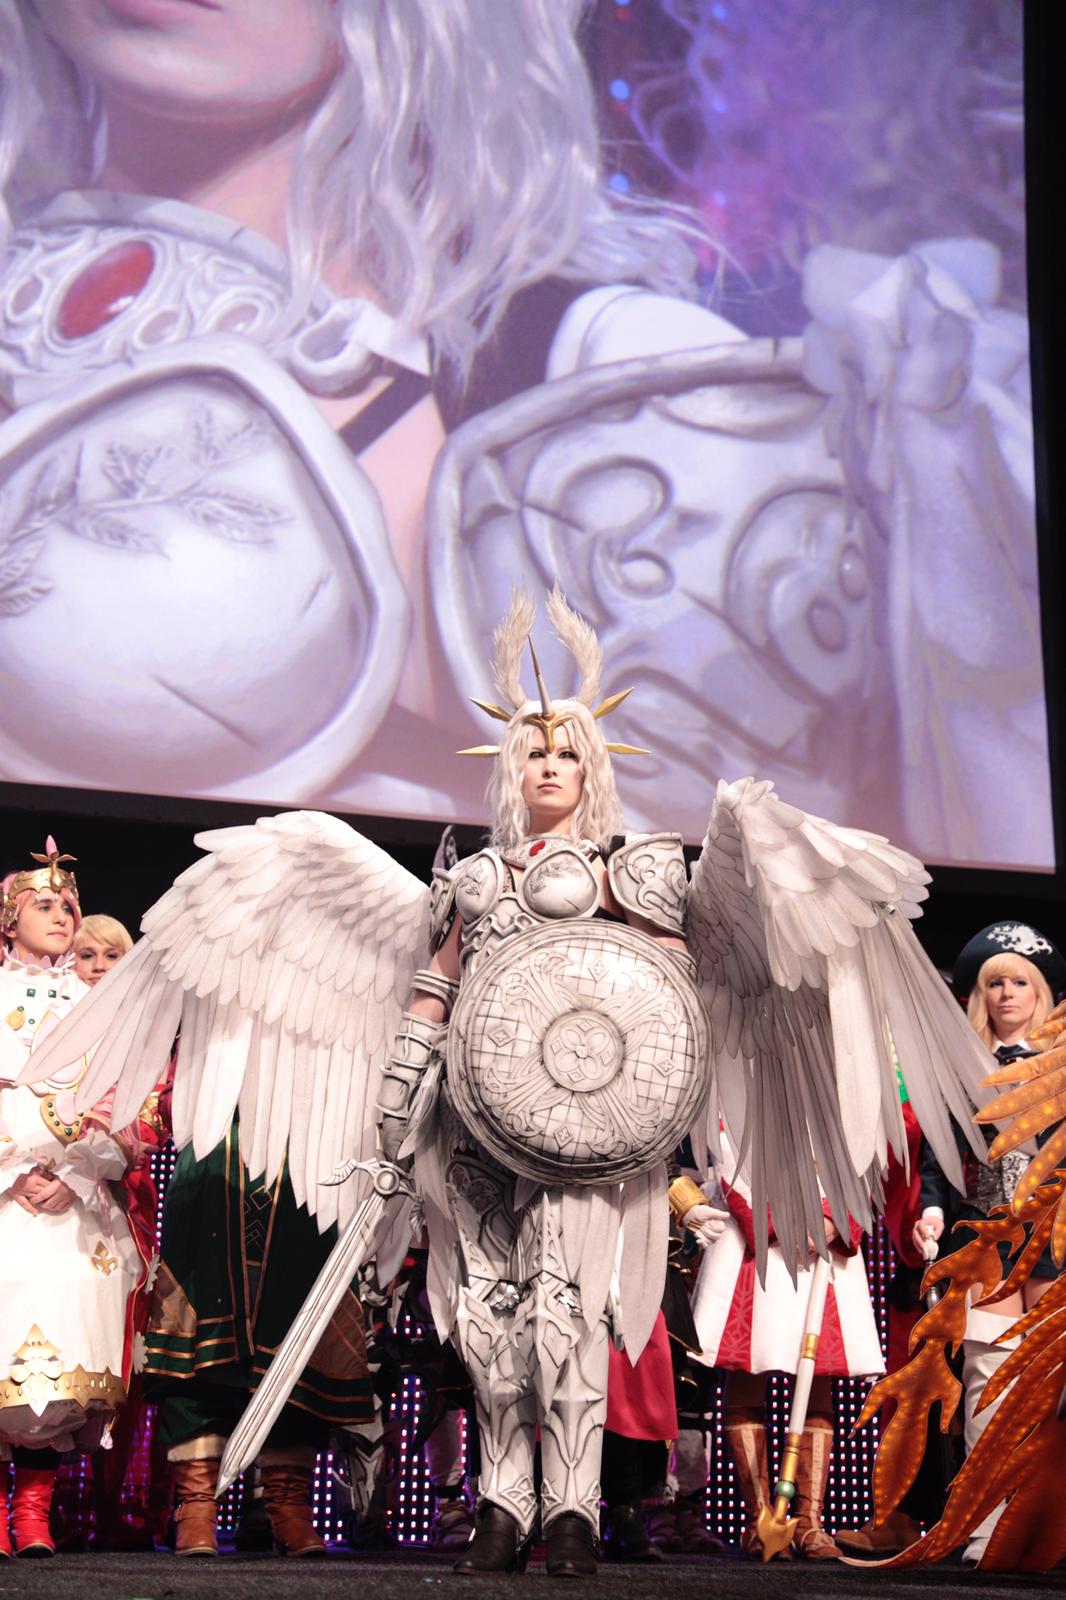 Anime Fan Fest Final Fantasy Cosplay, frasbob